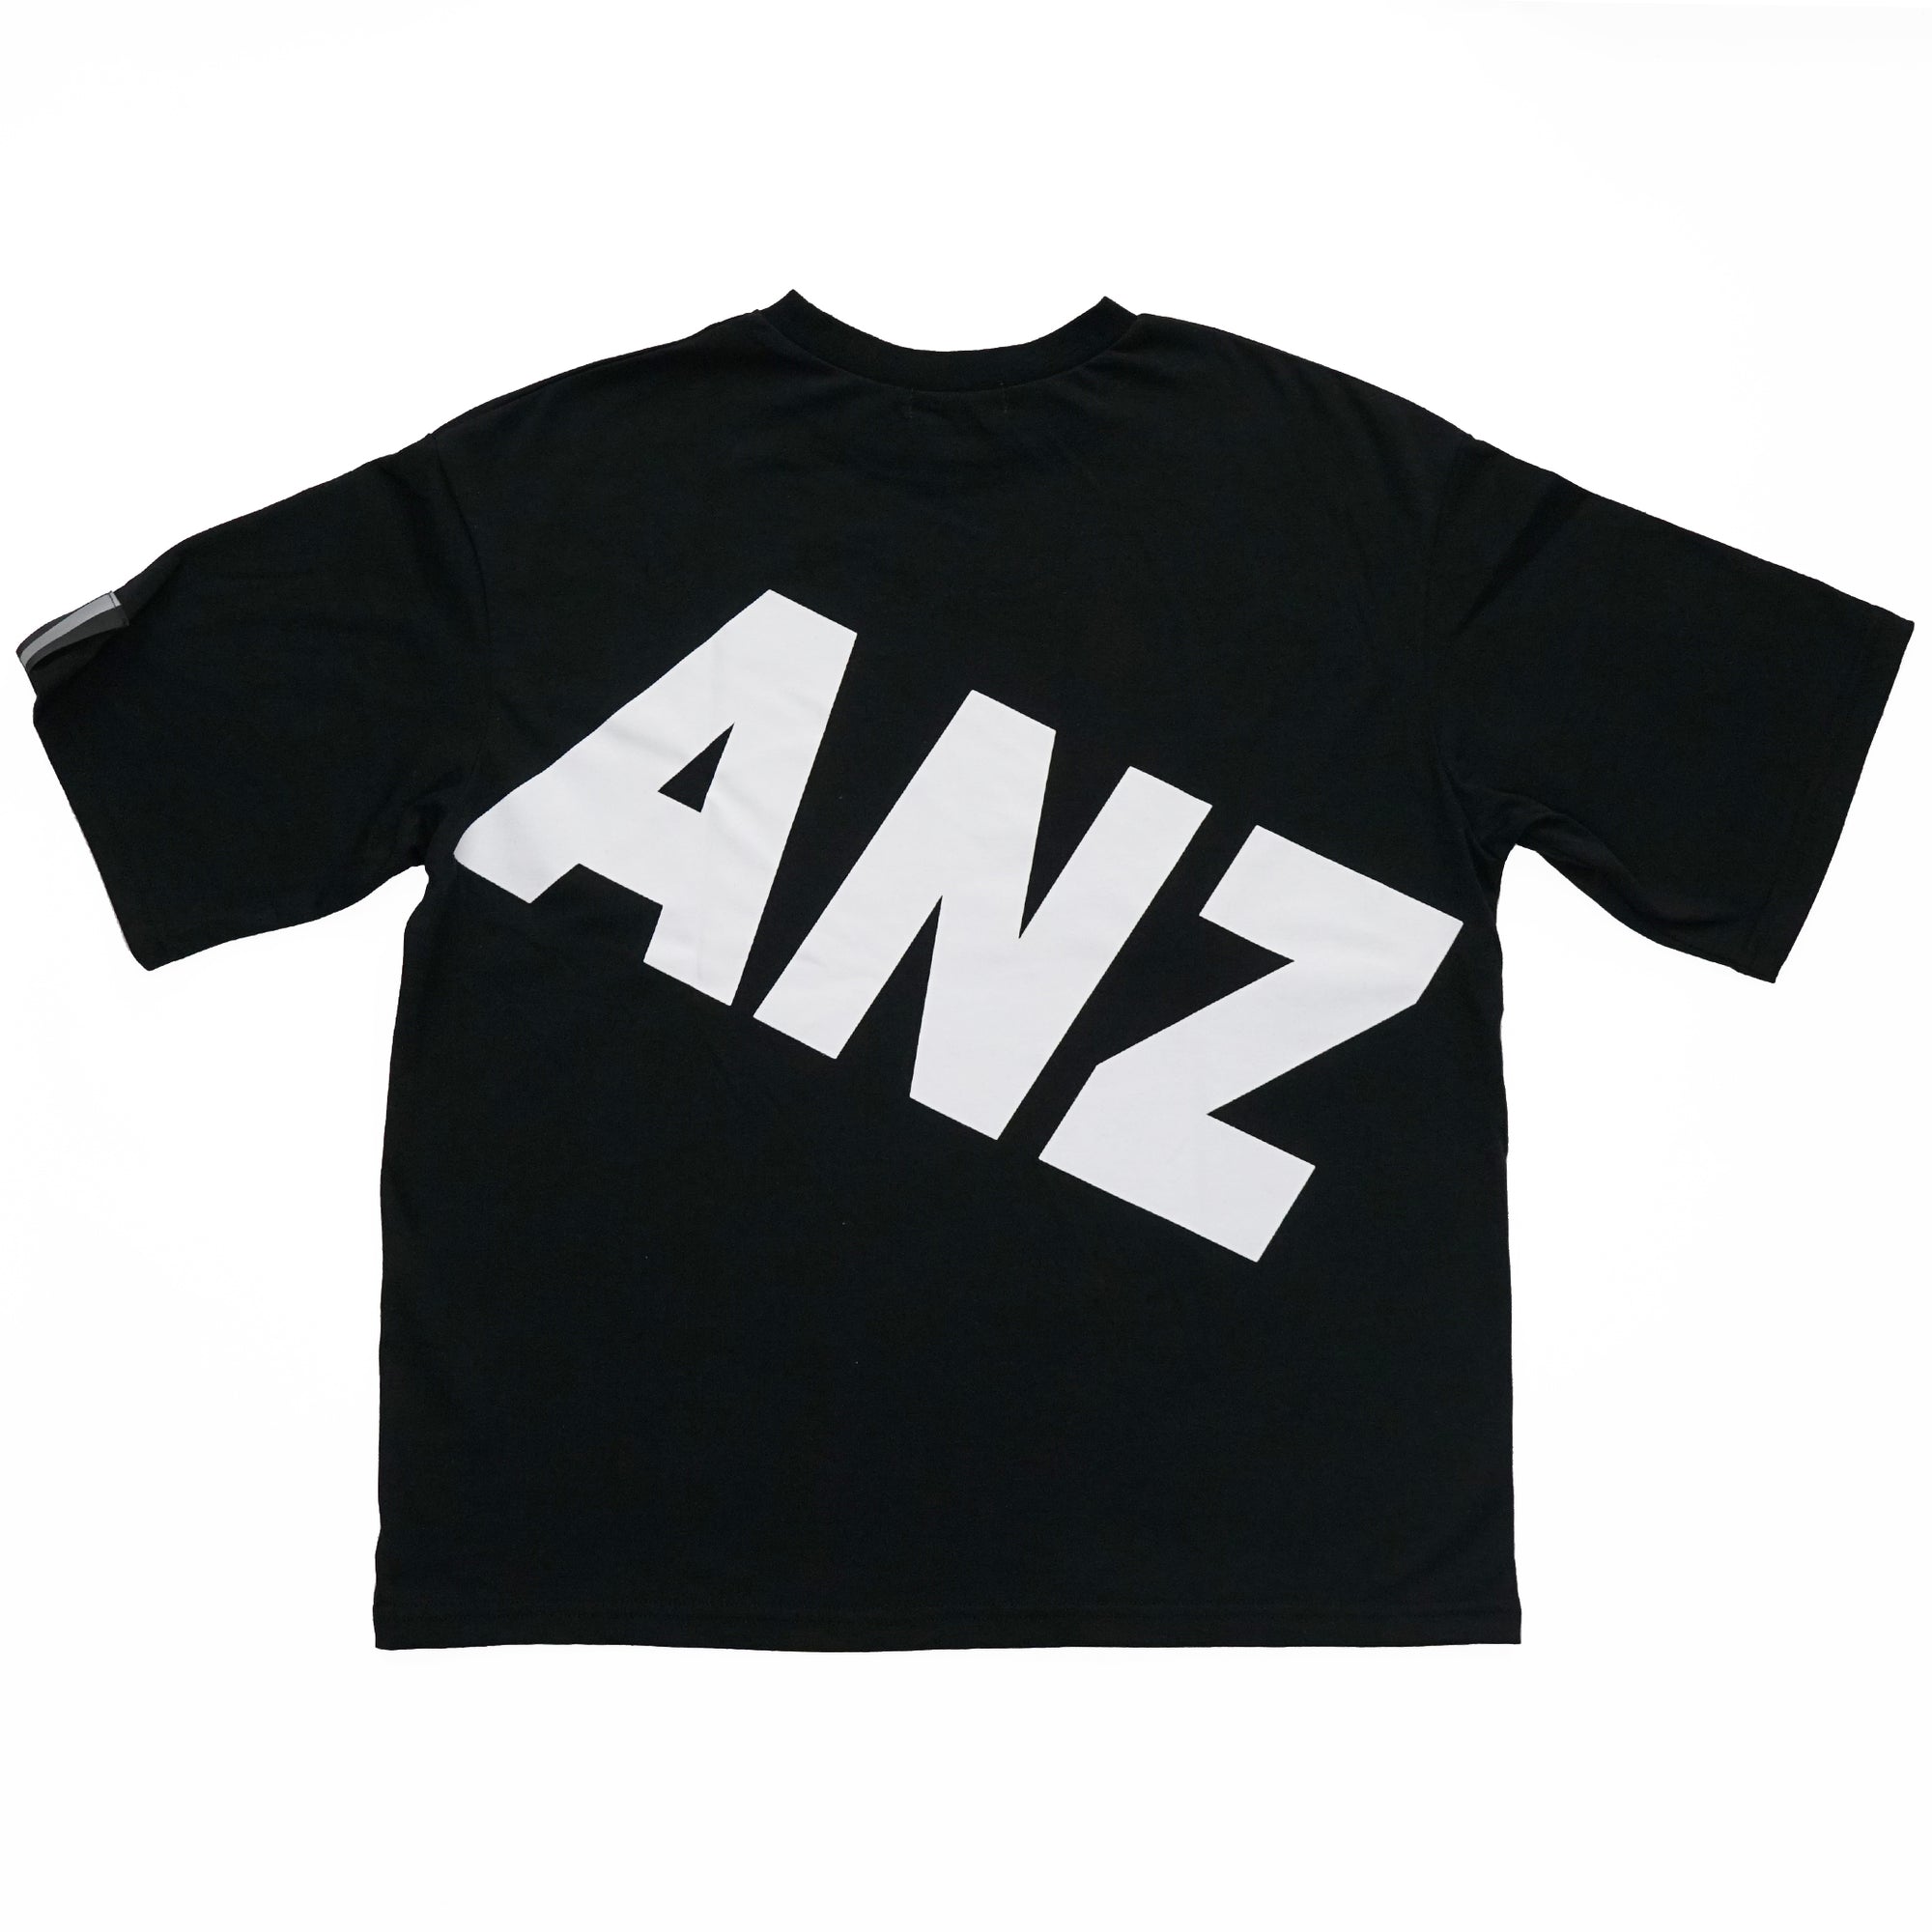 (40%オフ! セール商品)  ASIANZ HEAD2 ビッグロゴワイドTシャツ キッズウェアー